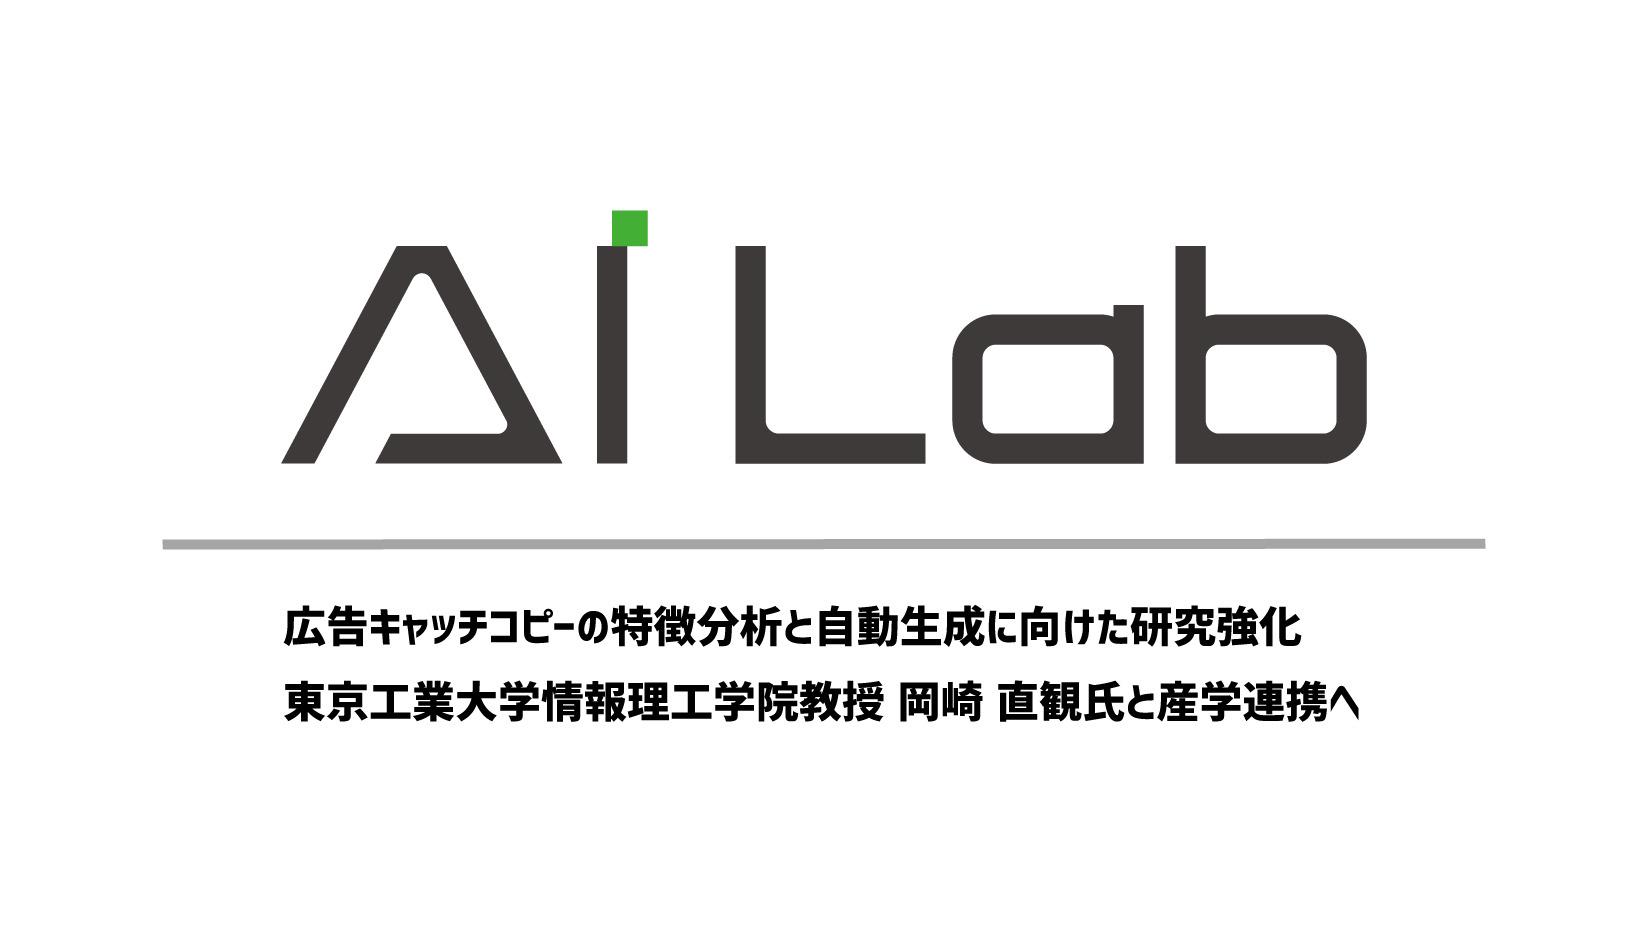 AI Lab